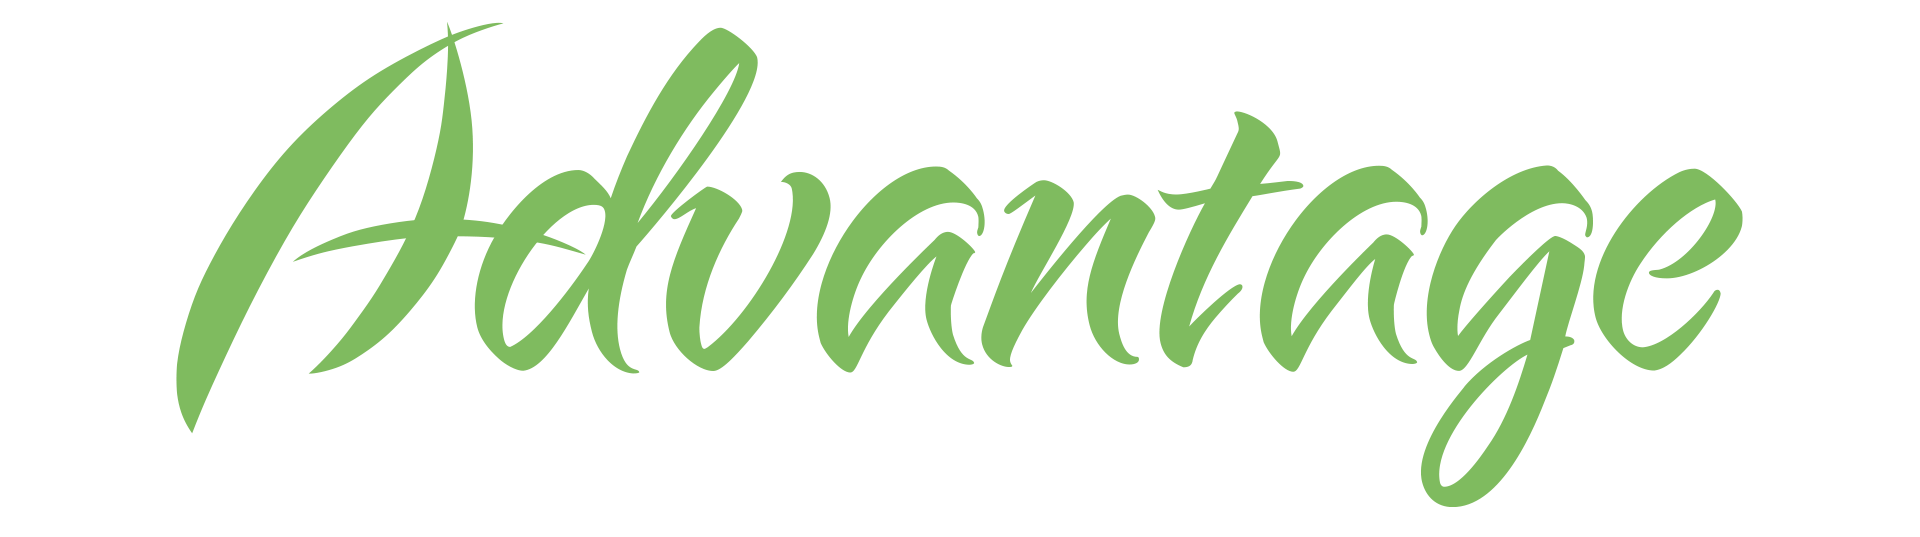 Albaugh Specialty Products Advantage Rewards Program logo